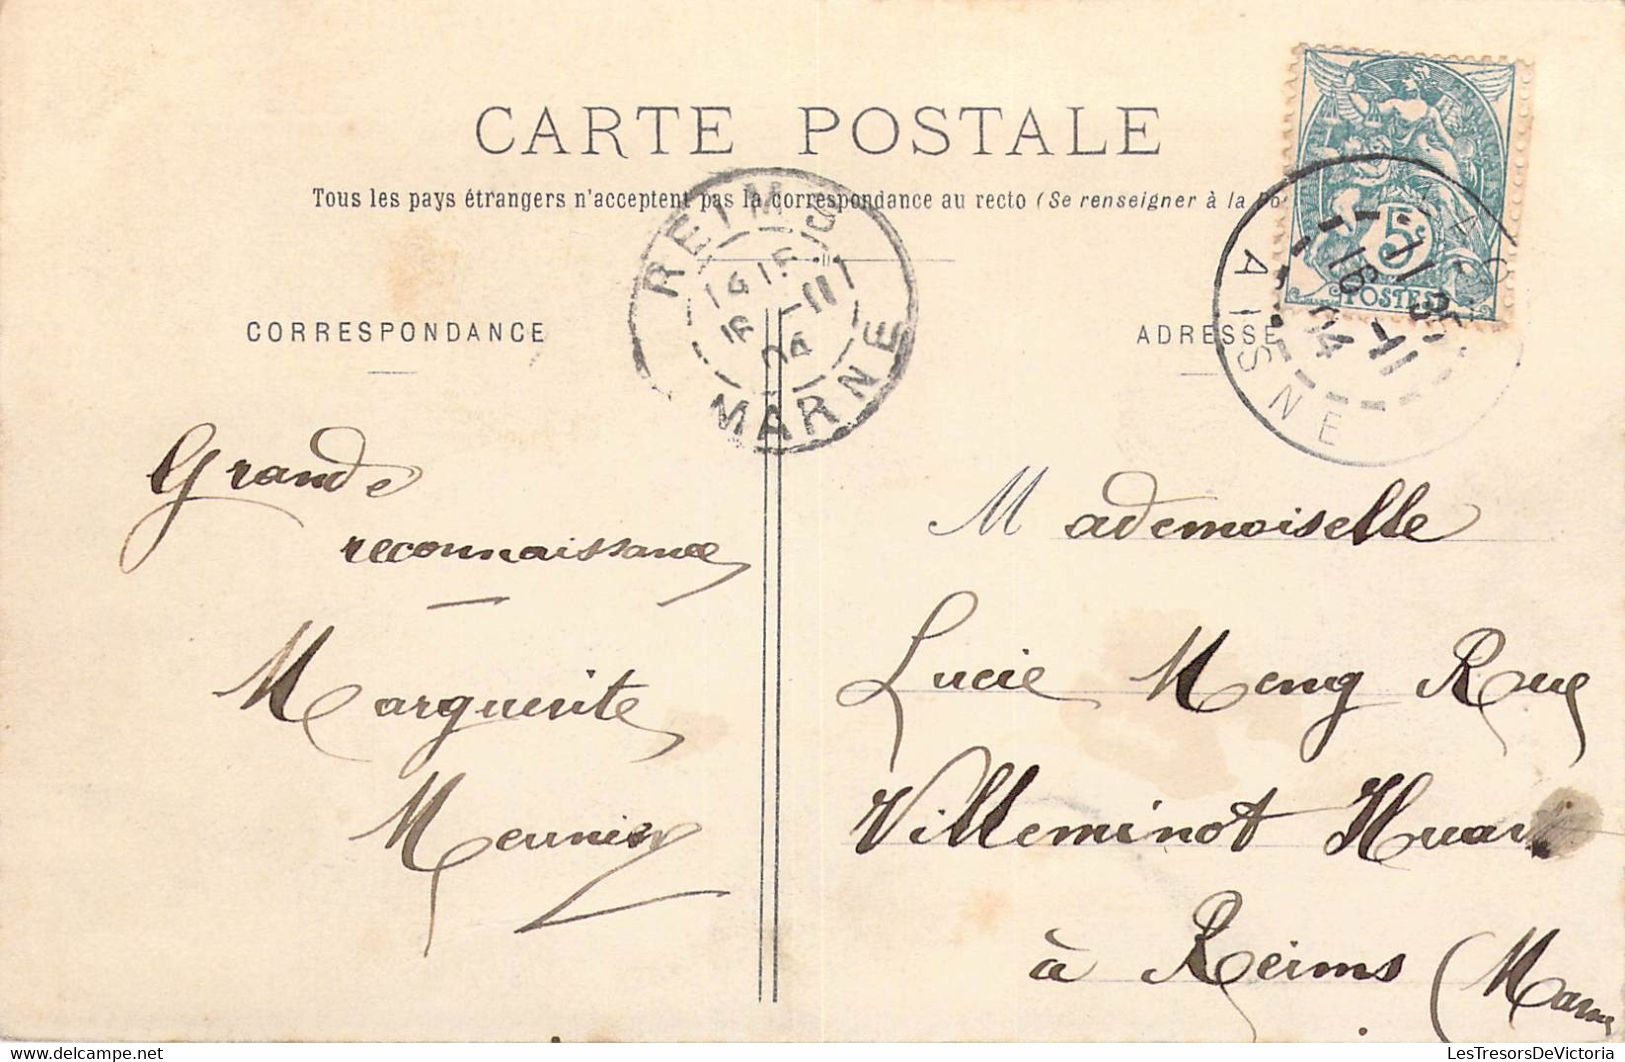 FRANCE - 02 - Laon - Vue Prise Du Mont De Vaux - Train - Editeur : F. Barnaud - Carte Postale Ancienne - Laon